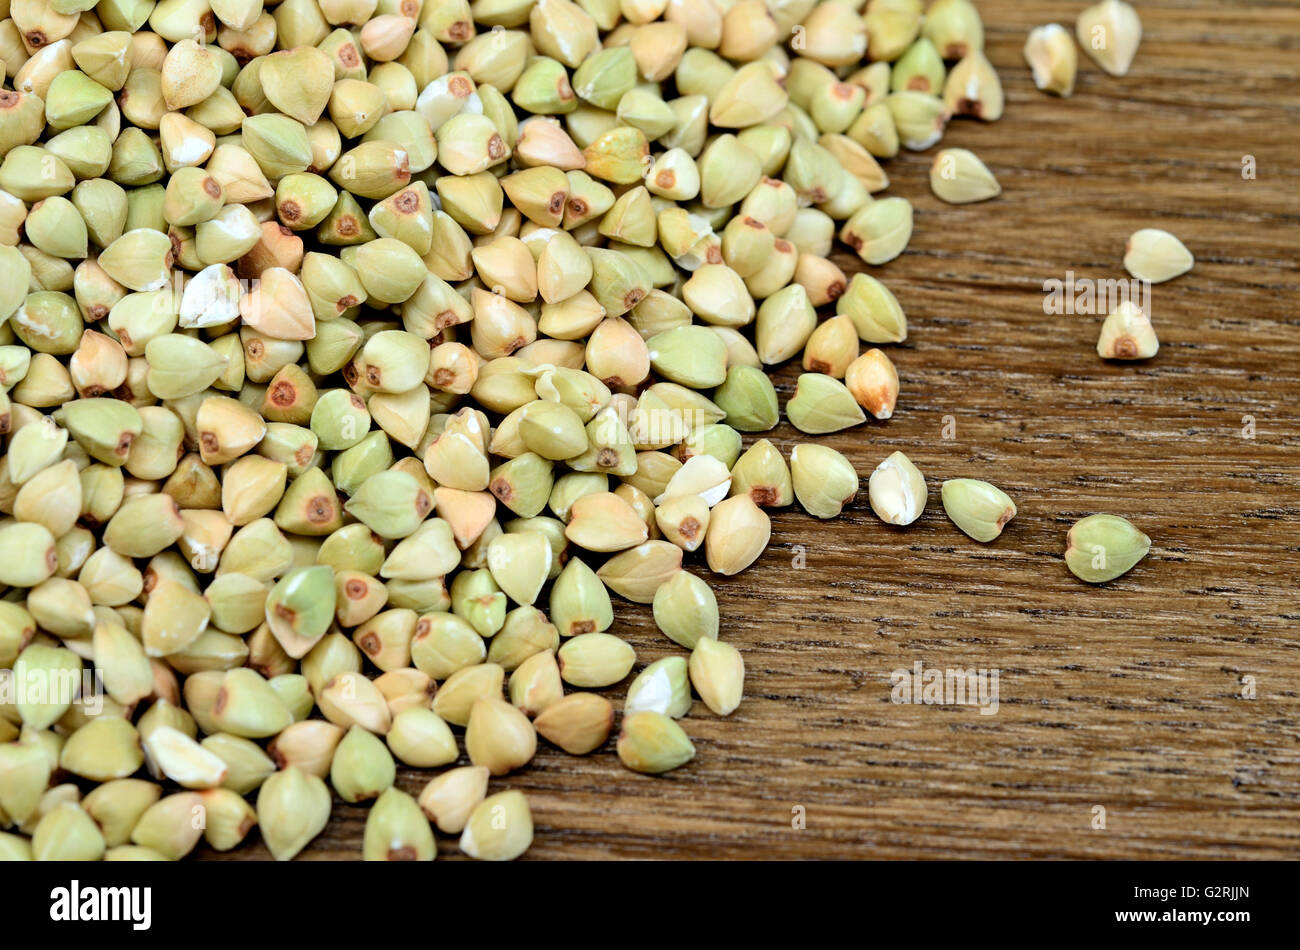 Green buckwheat on wooden table Stock Photo